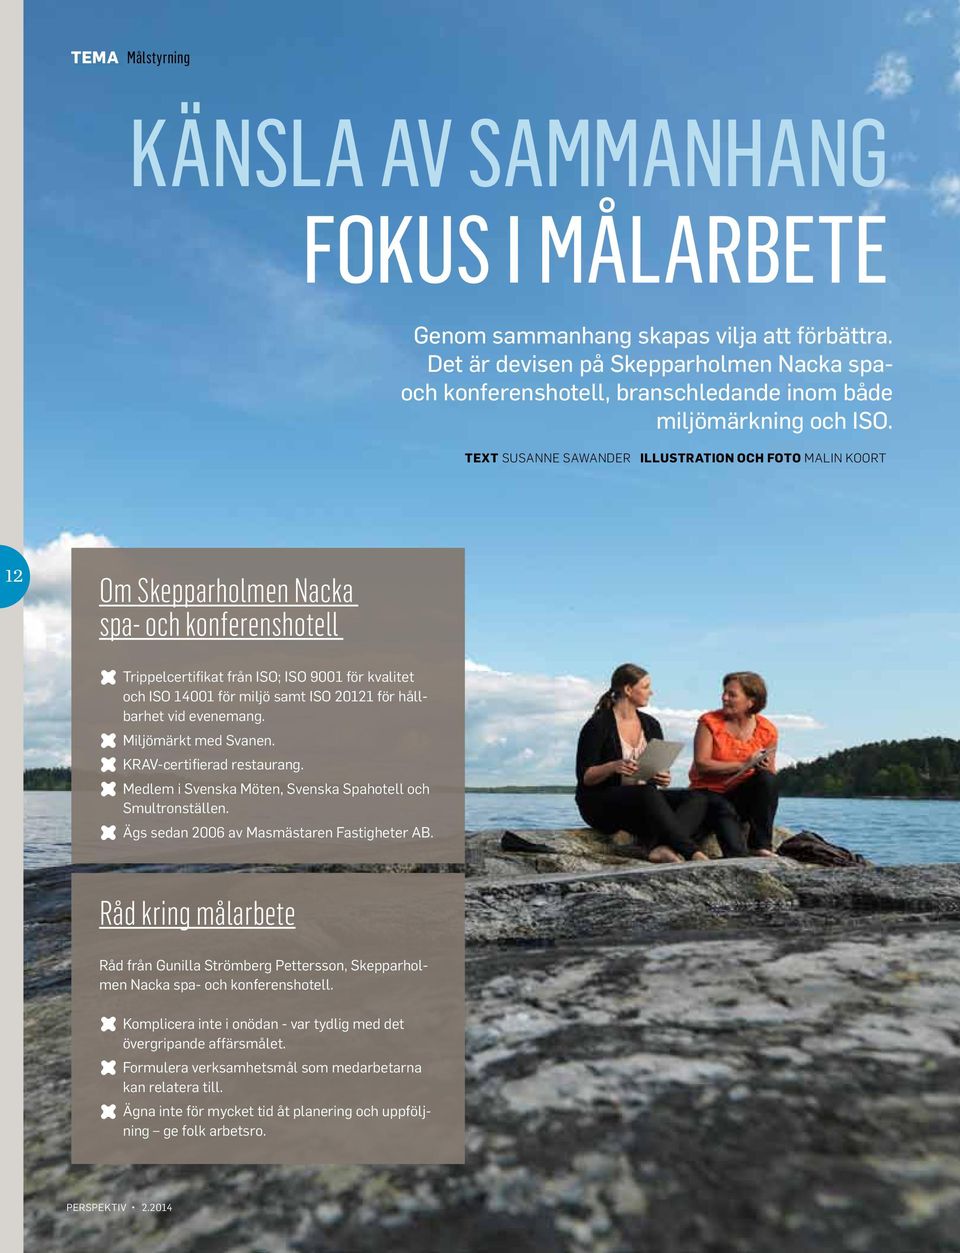 Text Susanne Sawander illustration och Foto Malin Koort 12 Om Skepparholmen Nacka spa- och konferenshotell LLTrippelcertifikat från ISO; ISO 9001 för kvalitet och ISO 14001 för miljö samt ISO 20121